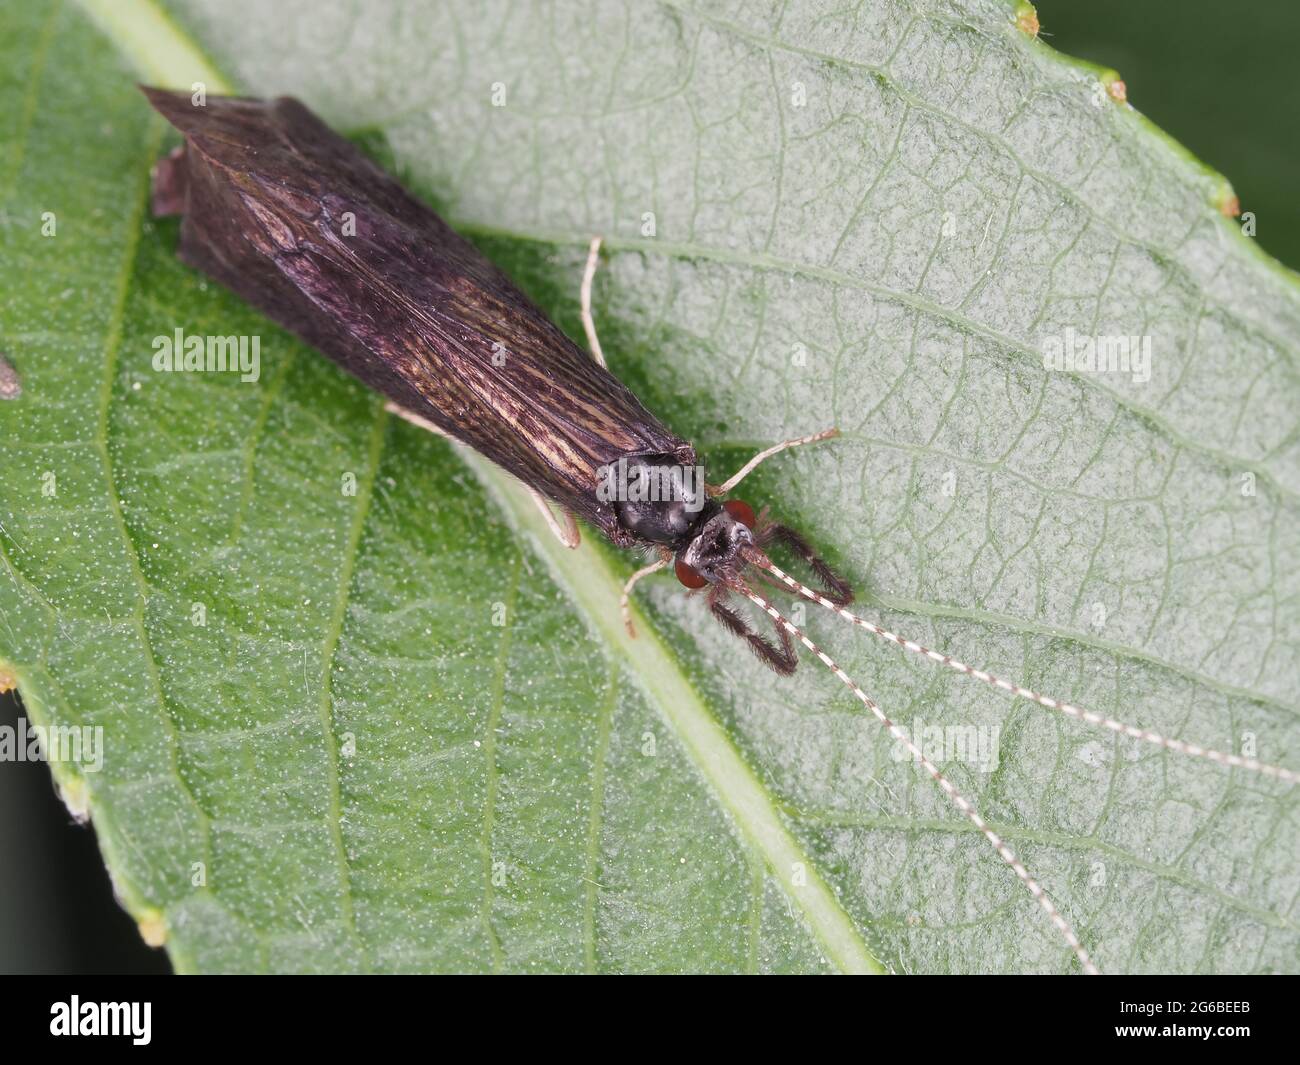 Schwarze Tänzerin-Kadadisfly (Mystacides sepulchralis) - Insektenmakro Stockfoto